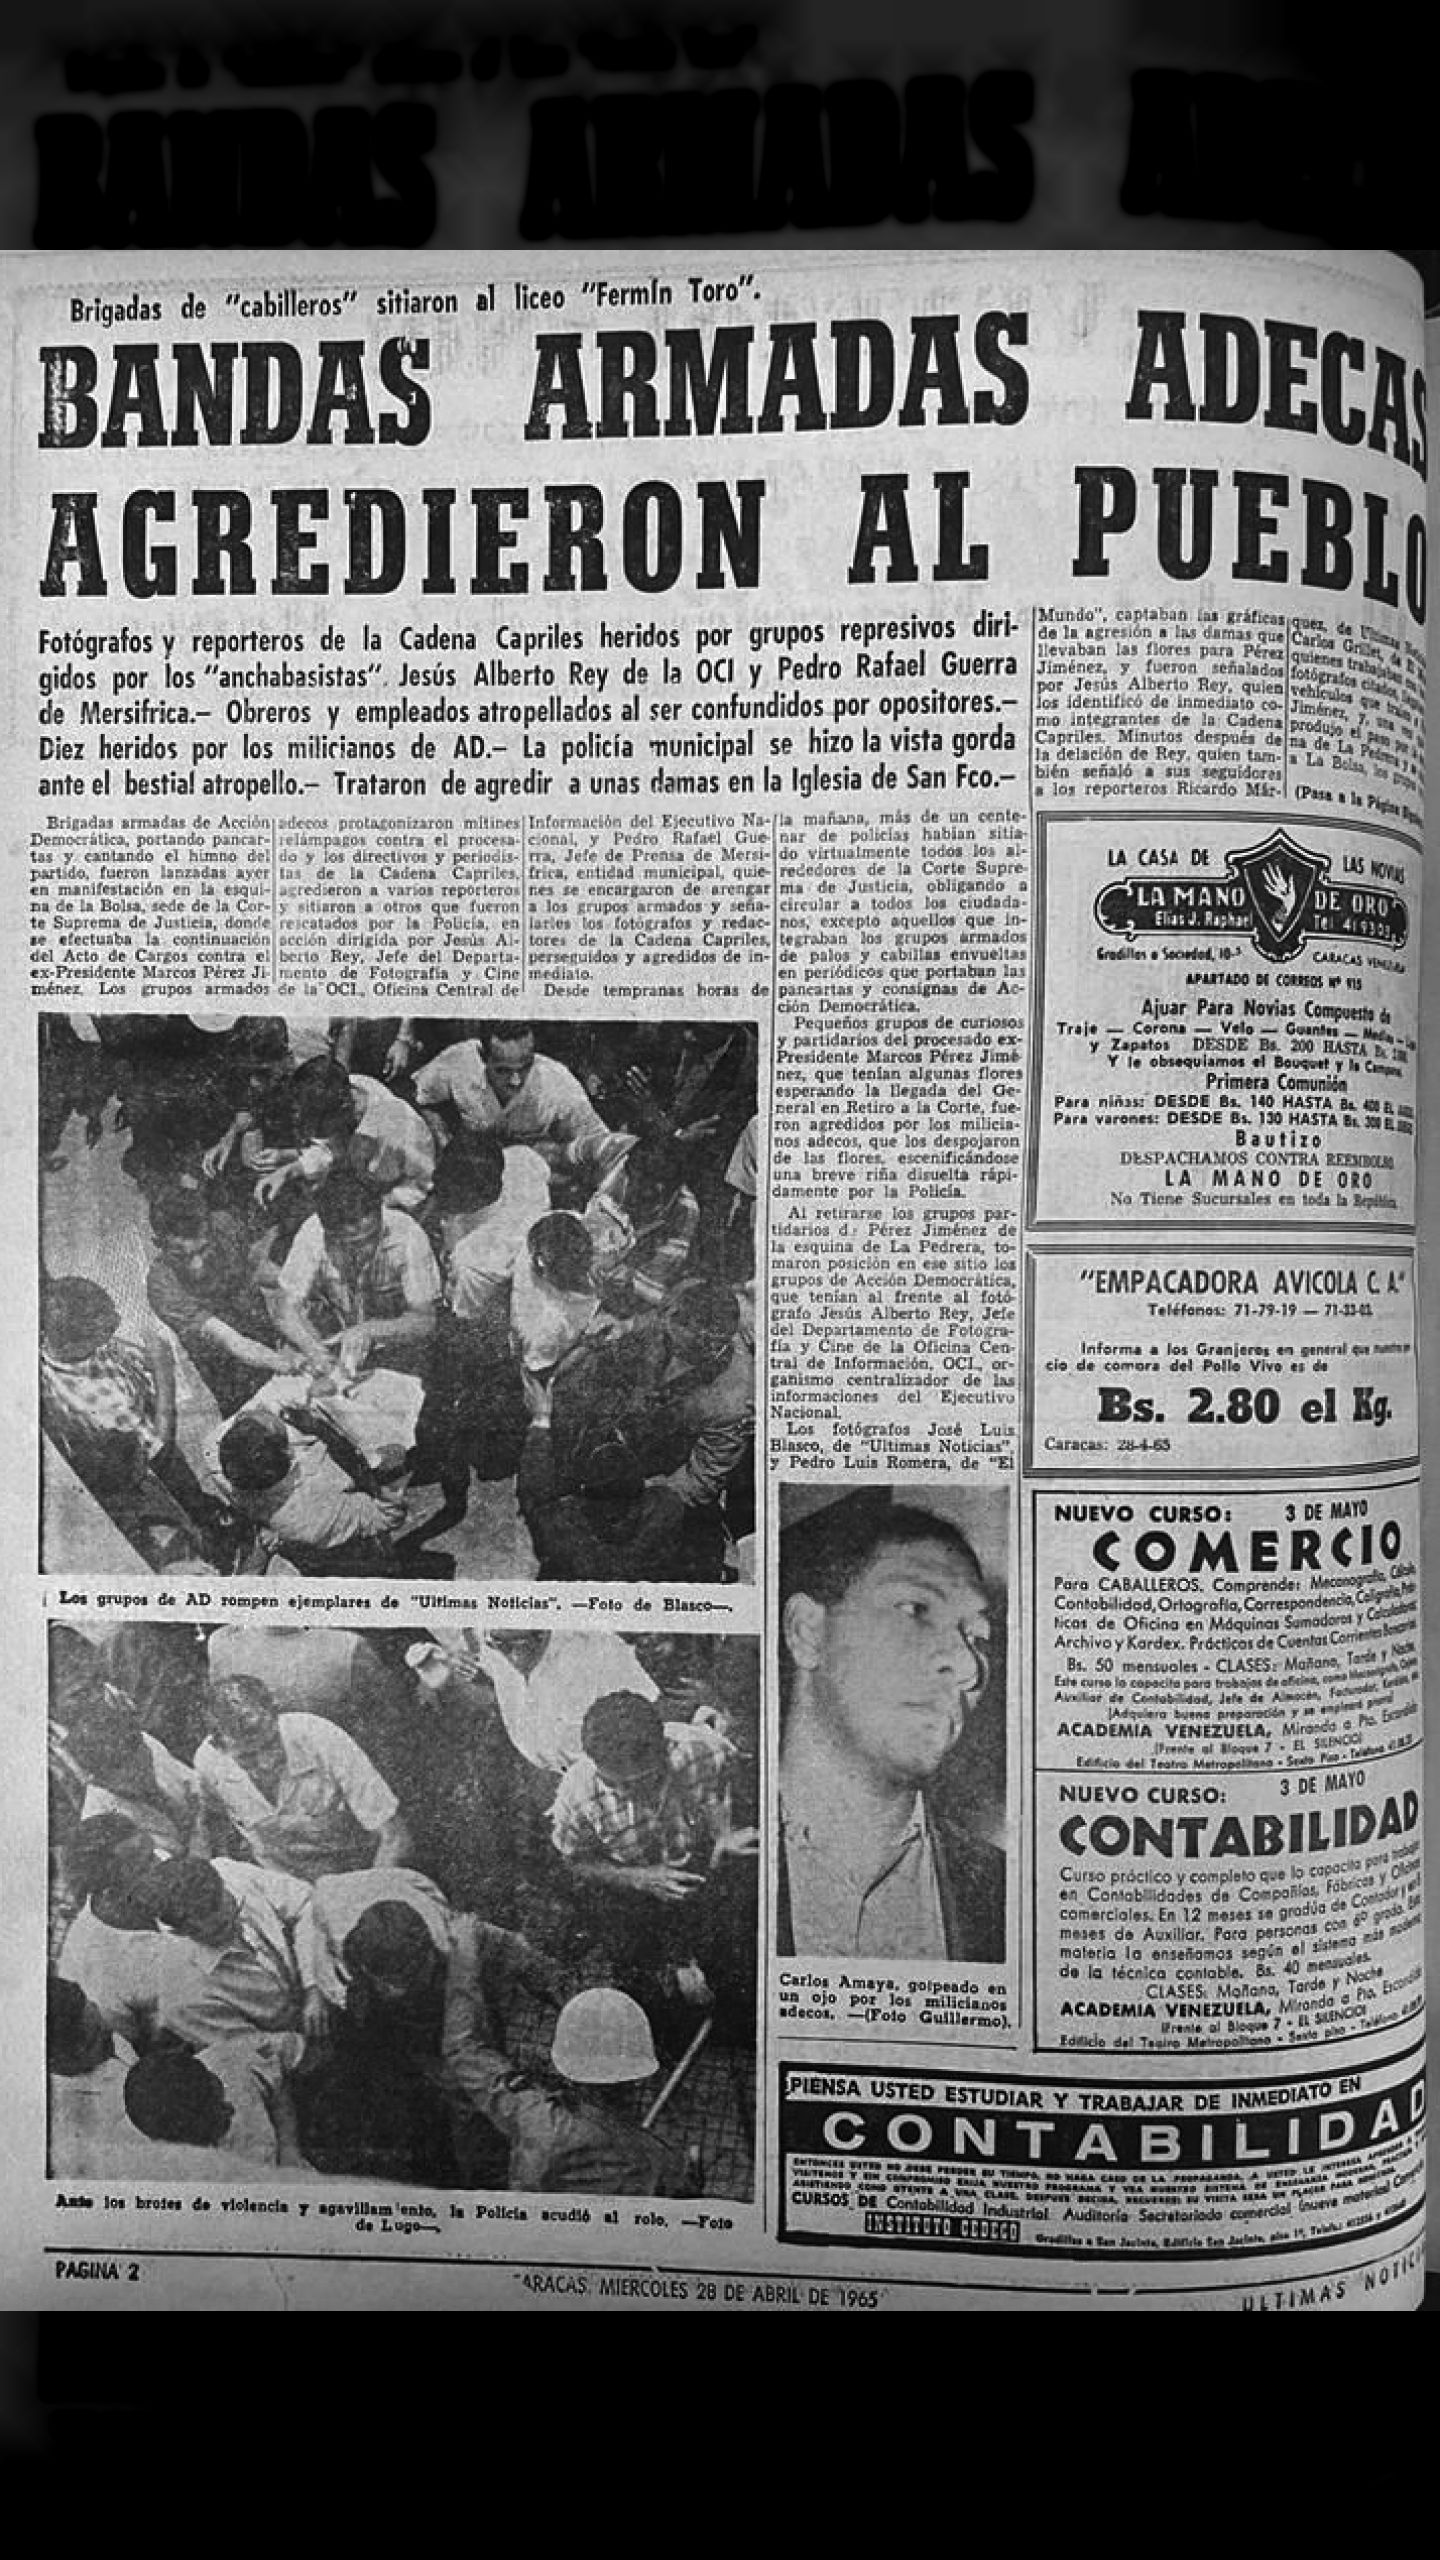 Bandas armadas Adecas agredieron al pueblo (Últimas Noticias, 28 de abril de 1965)